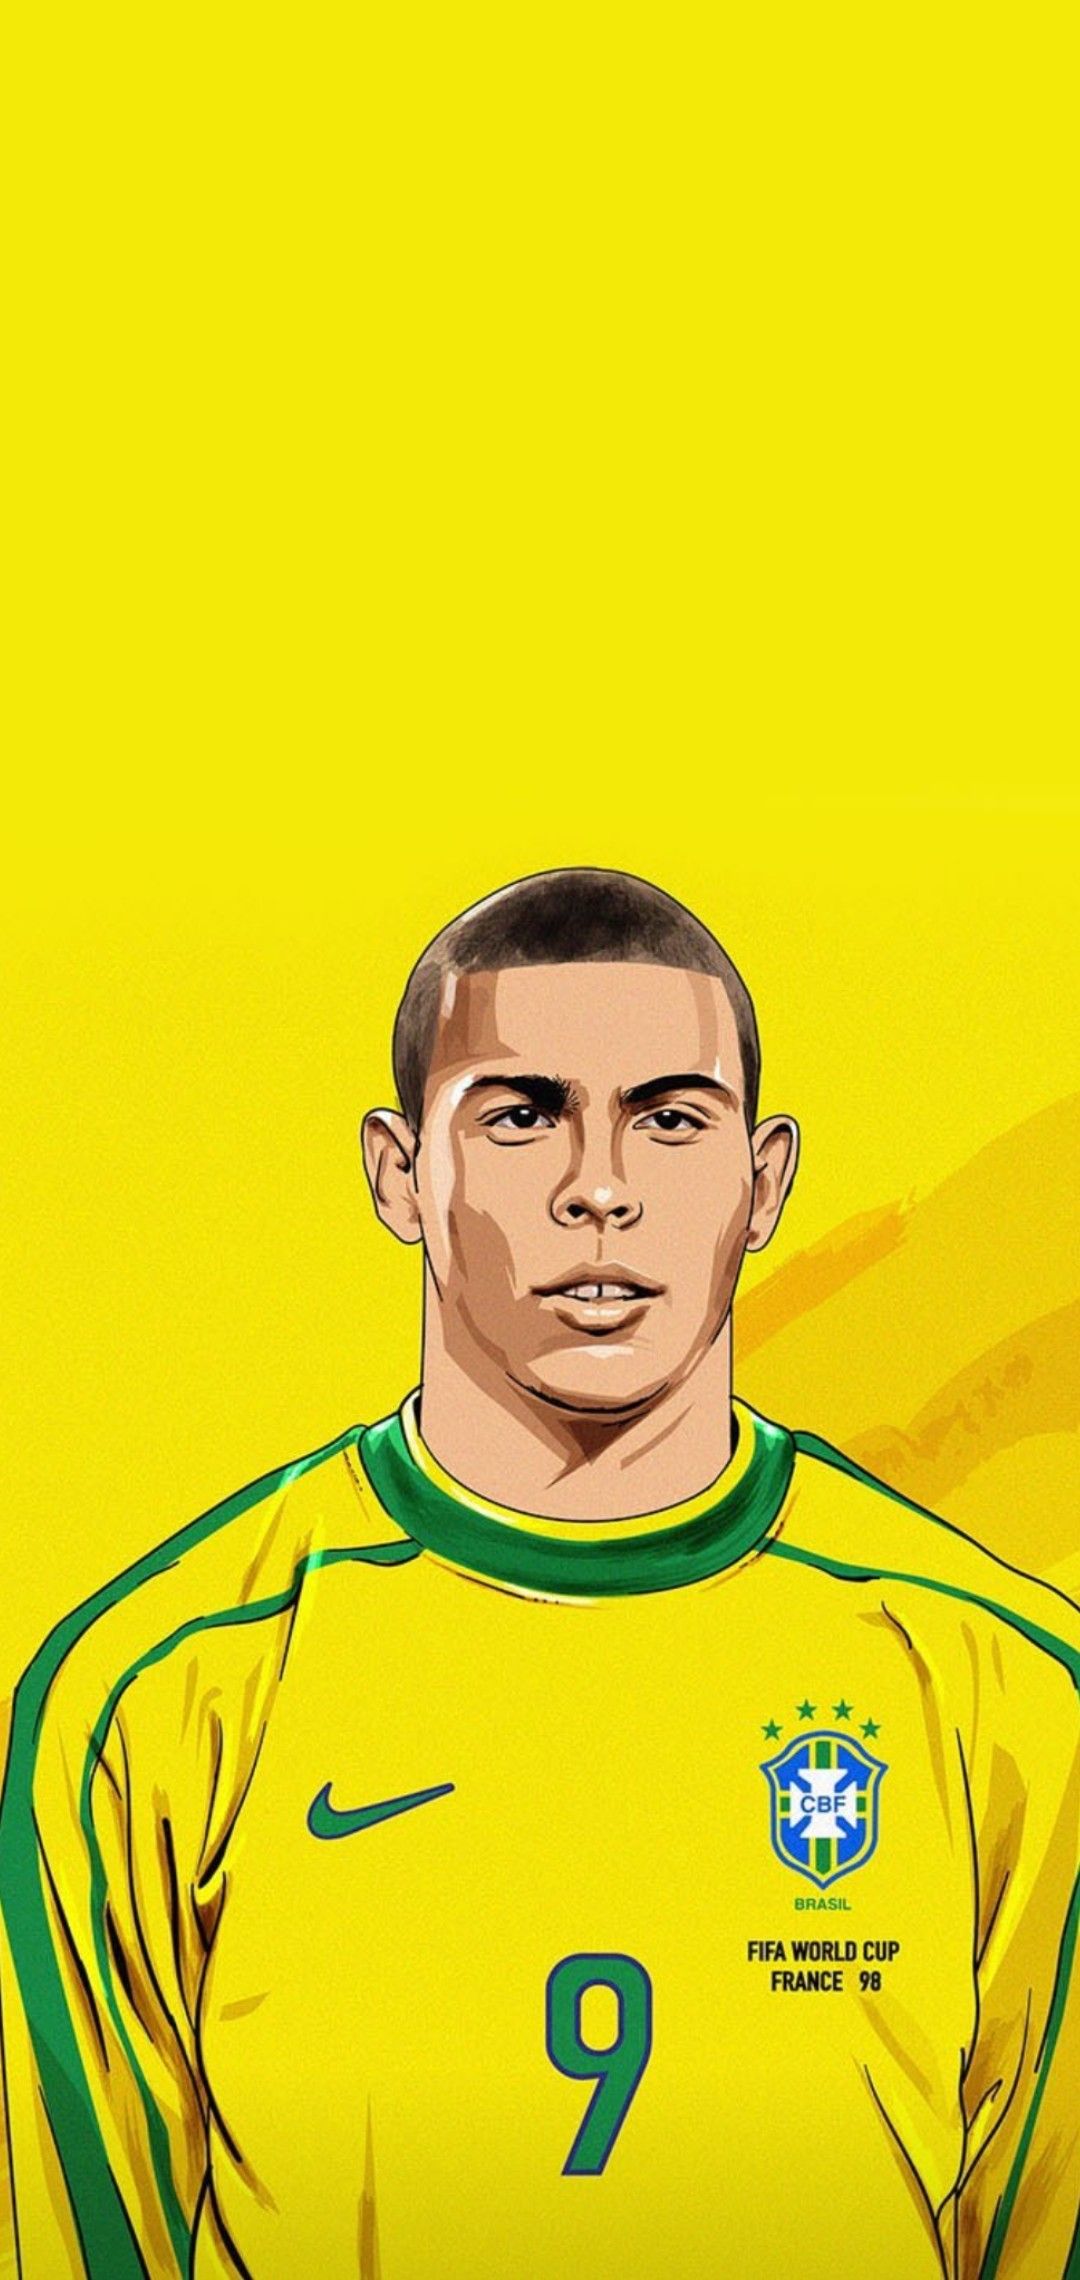 Hãy trang trí chiếc điện thoại của bạn với những hình nền iPhone của những cầu thủ bóng đá Brazil nổi tiếng như Ronaldo. Wallpaper Cave sẽ cung cấp cho bạn rất nhiều lựa chọn với chất lượng hình ảnh độc đáo và sáng tạo.